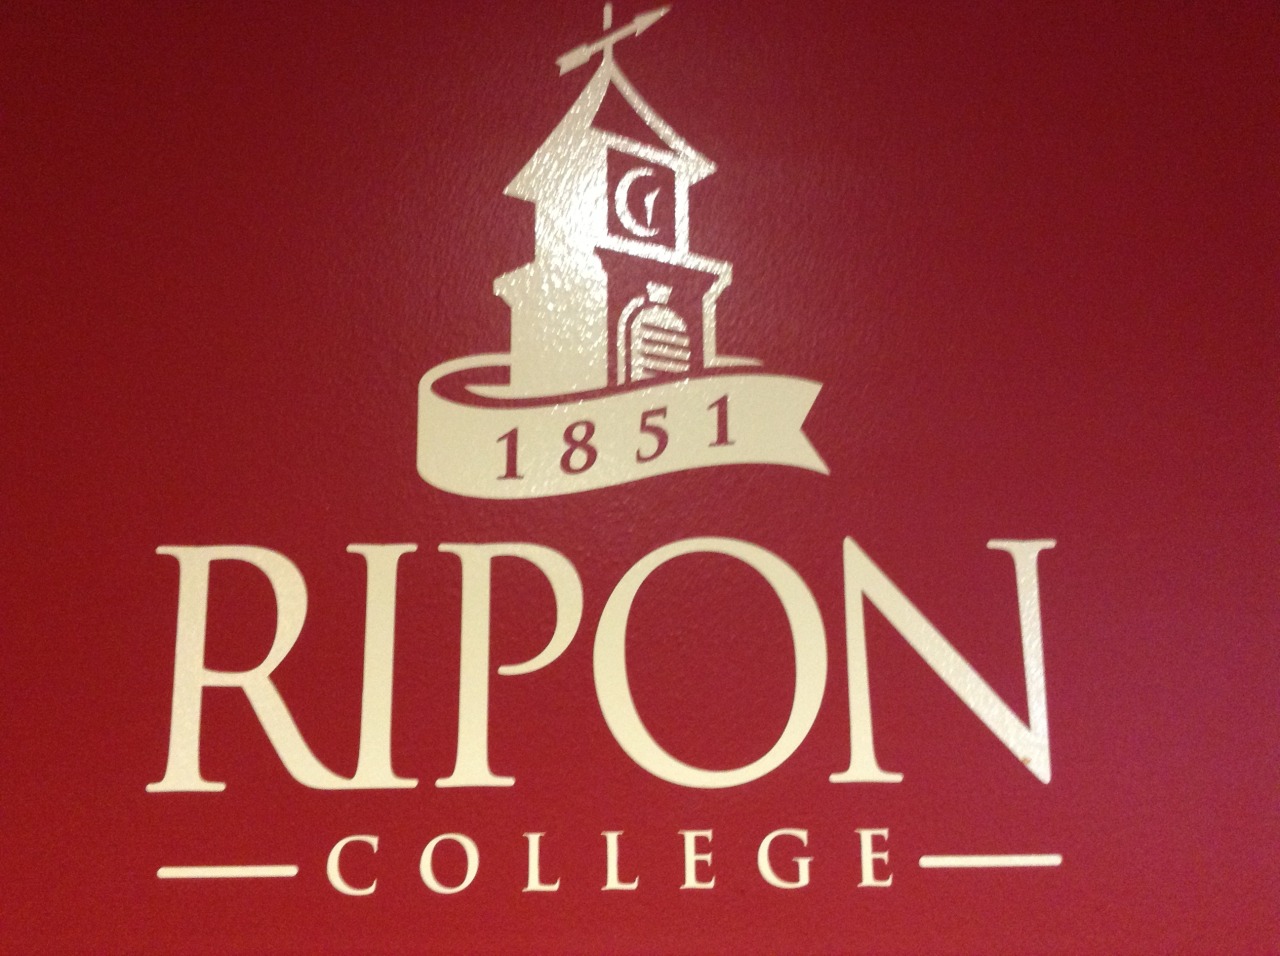 Blanche Tour Ripon College A Private Liberal Arts College